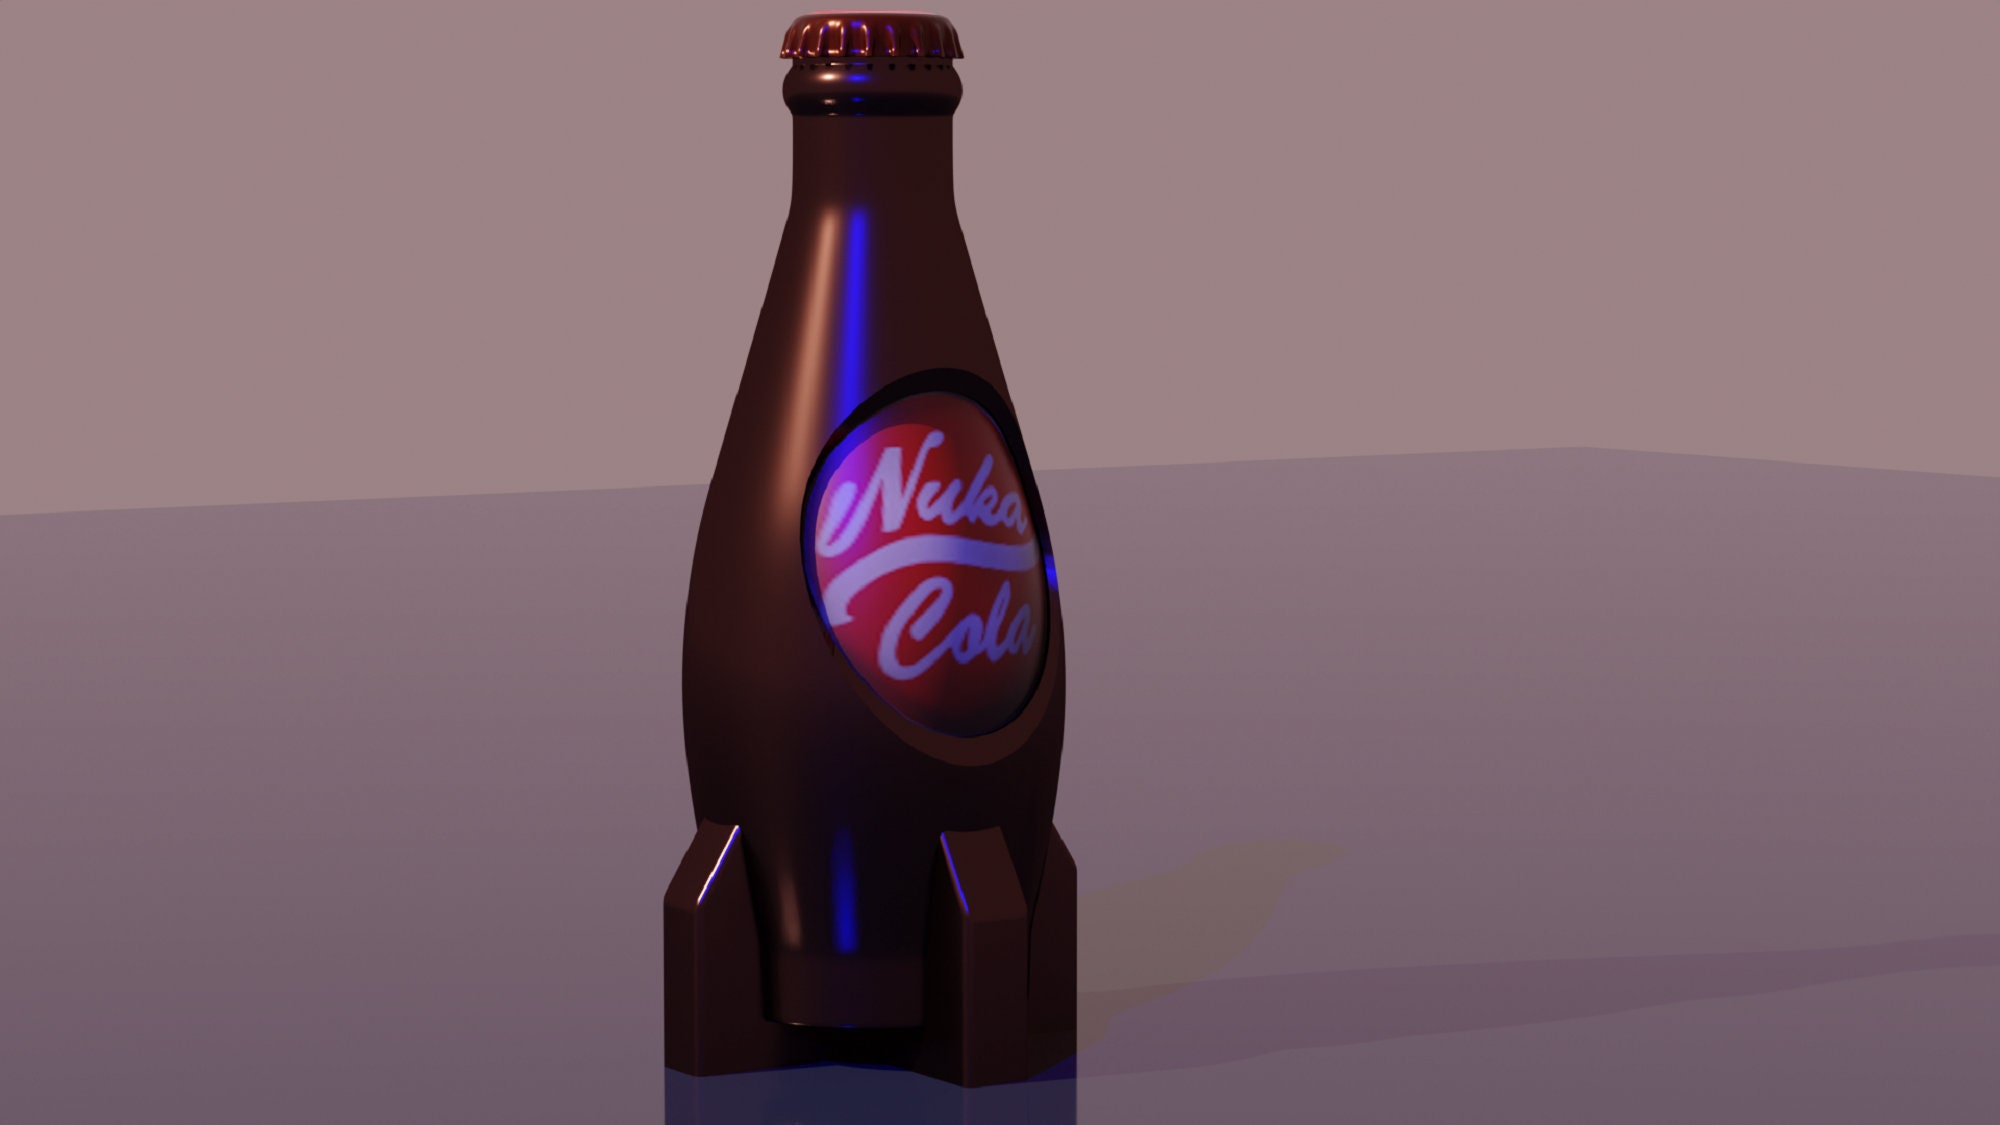 Nuka cola glass bottle - .de